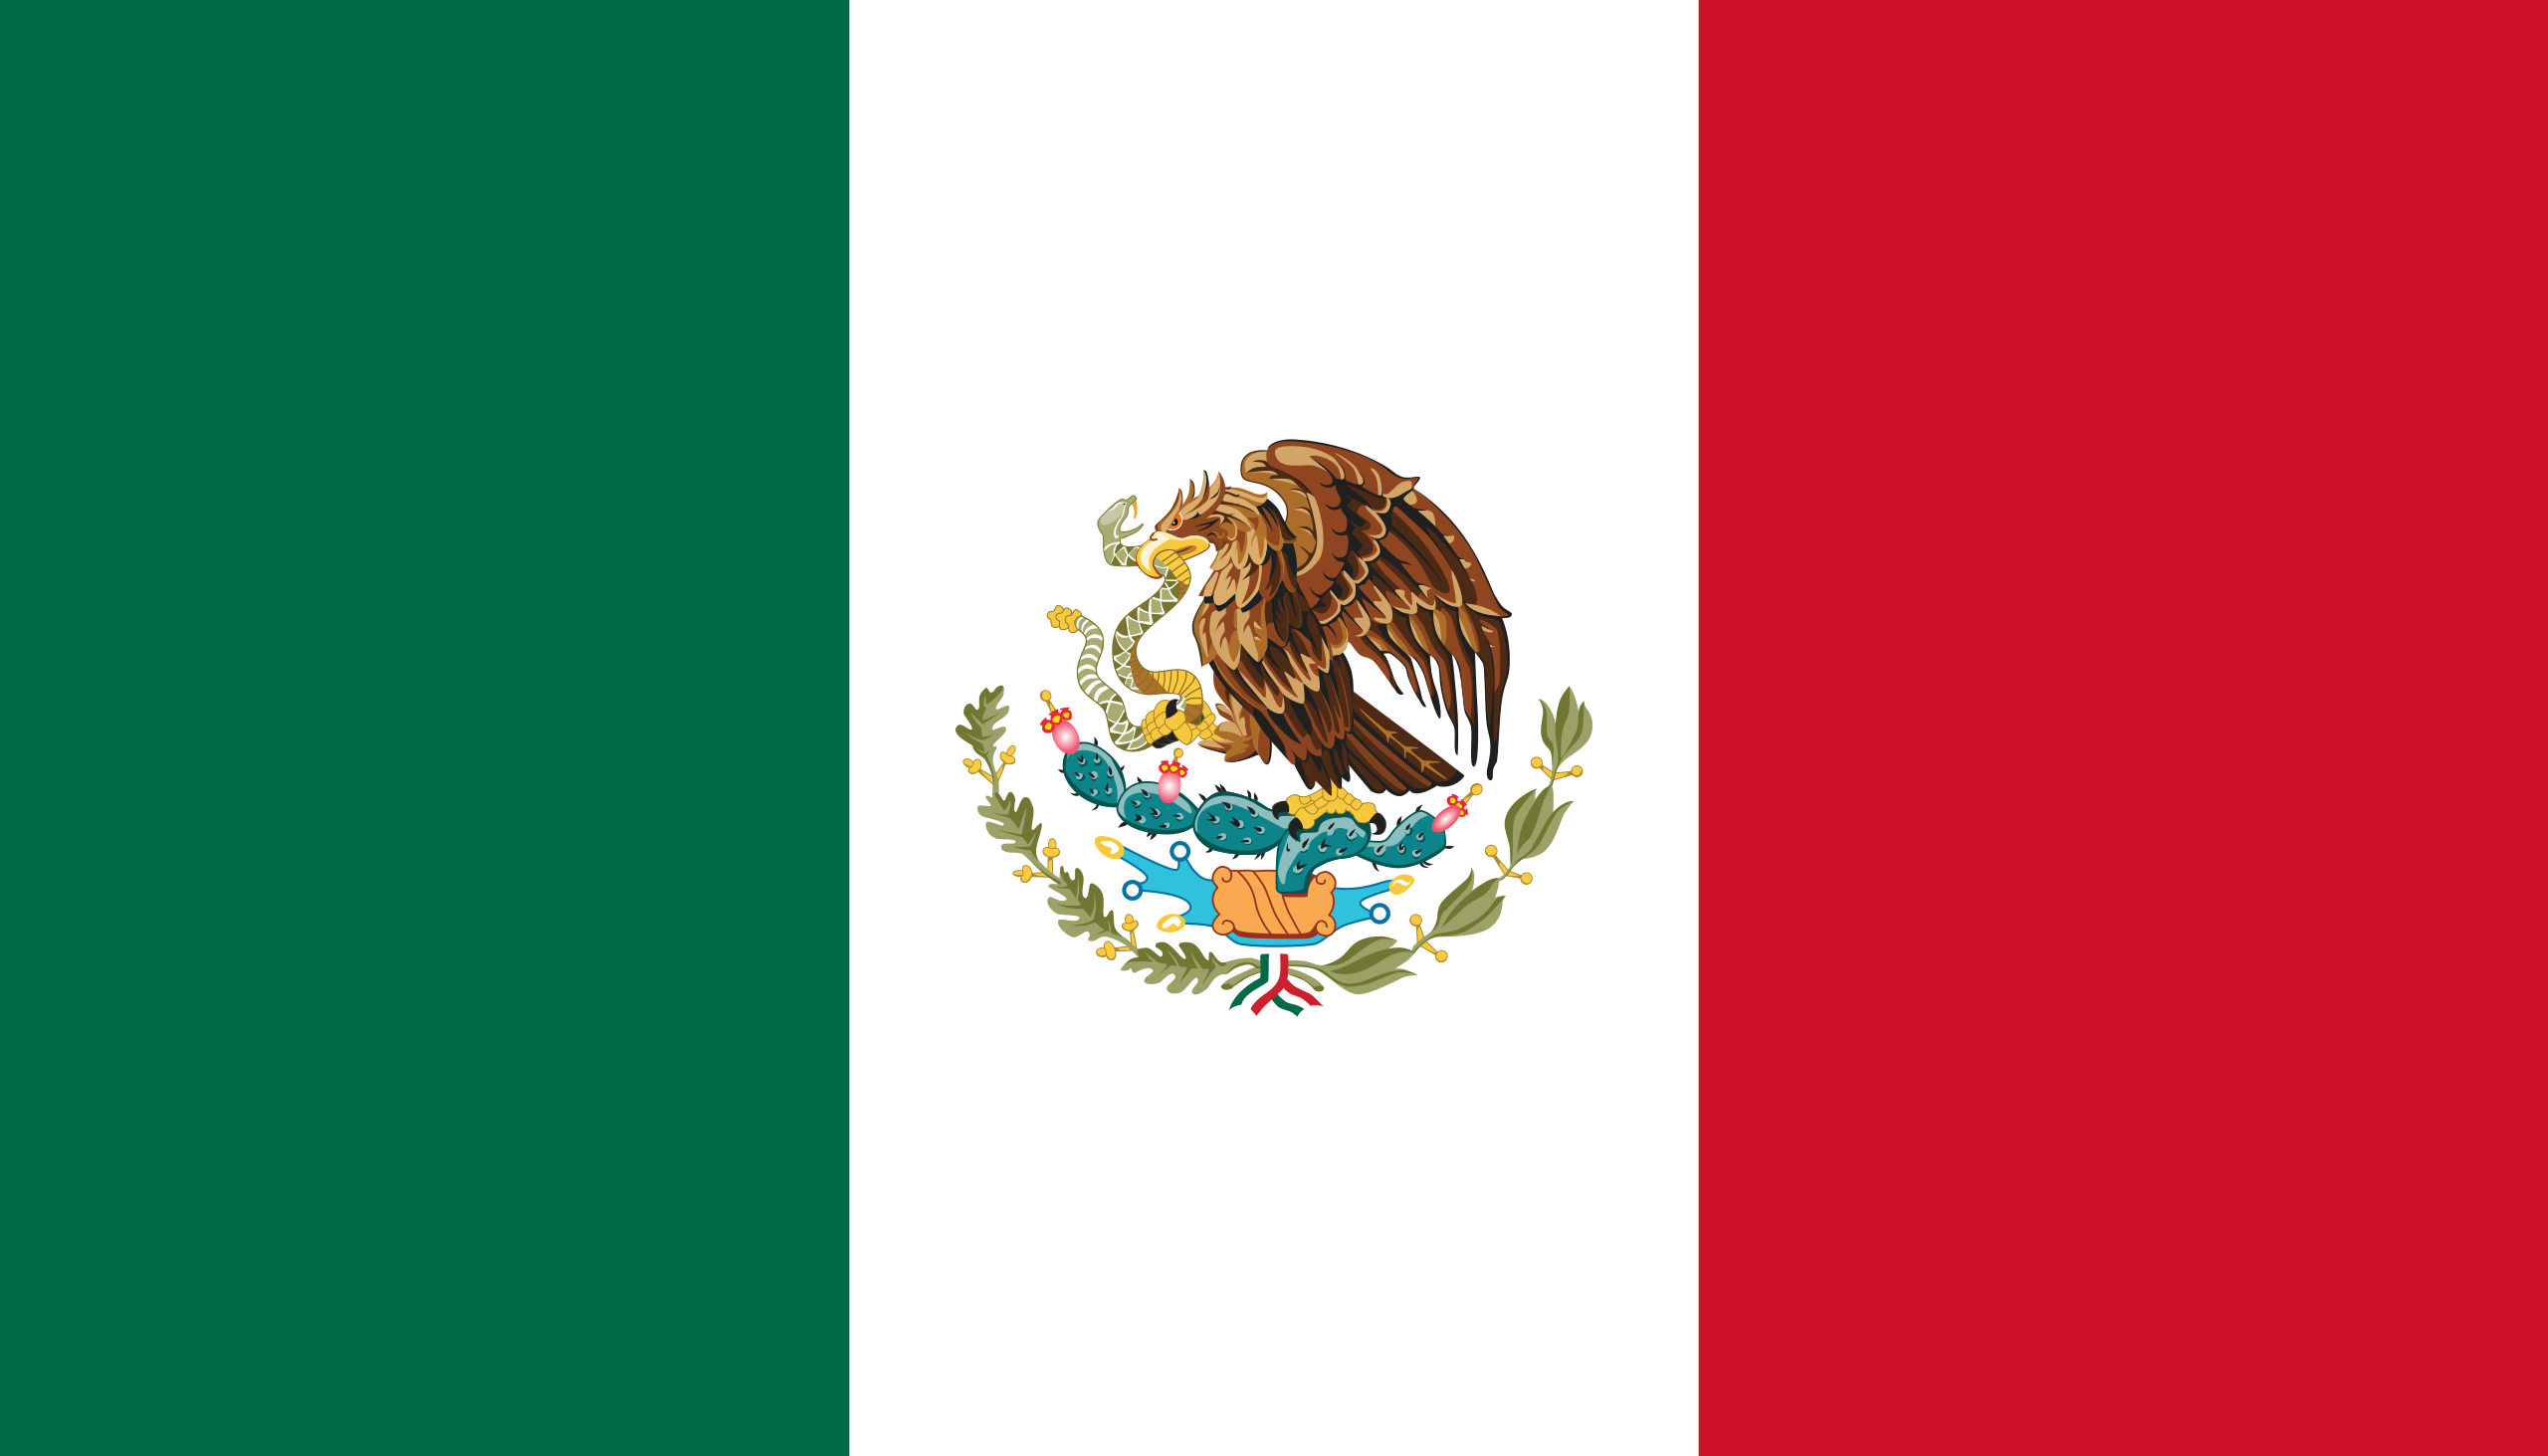 Steagul Mexicului